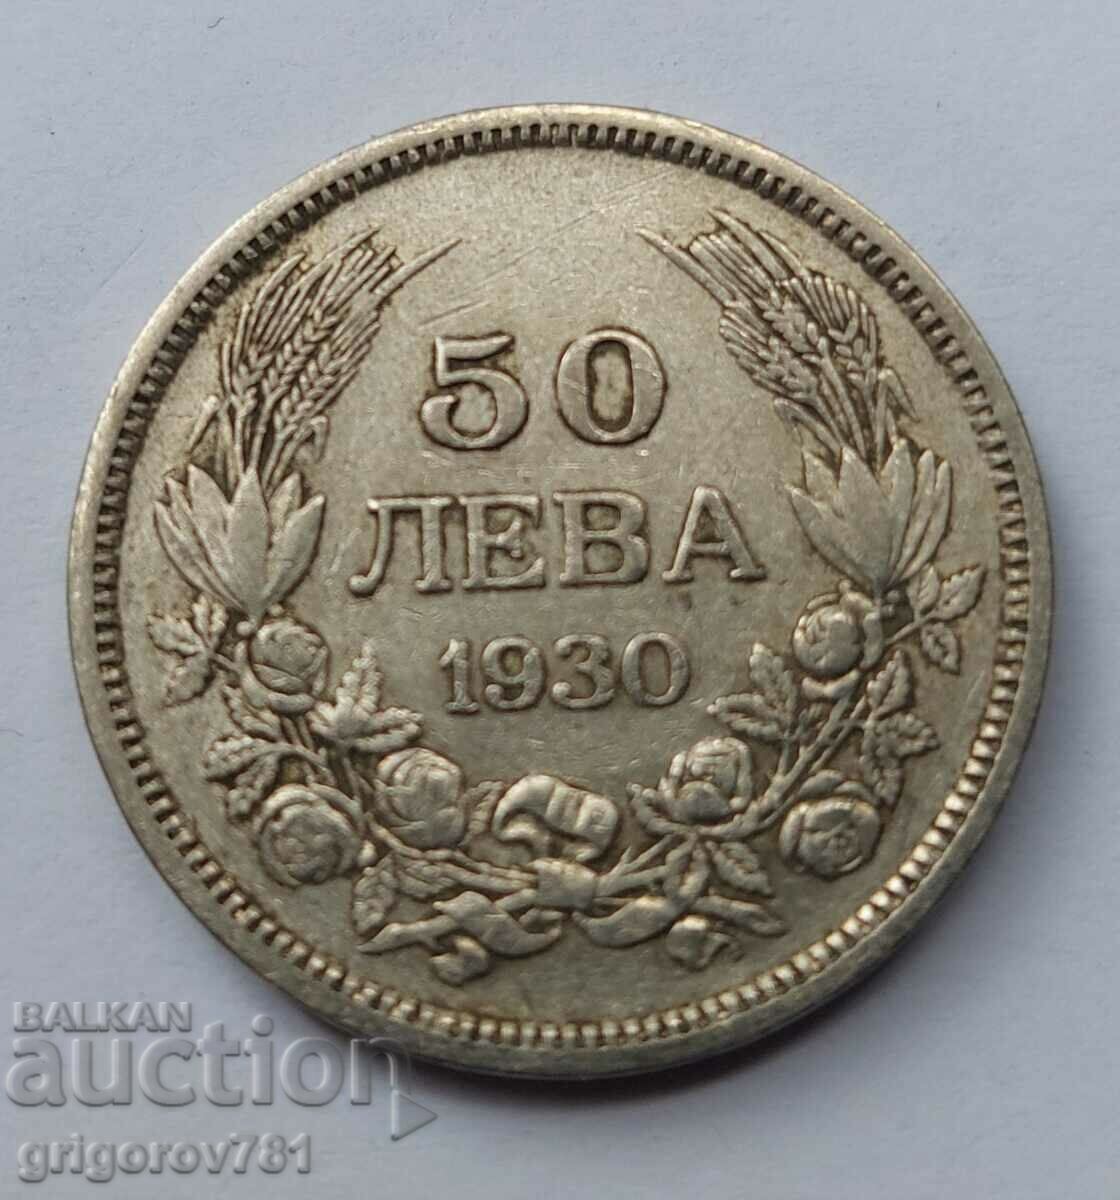 50 leva silver Bulgaria 1930 - silver coin #57